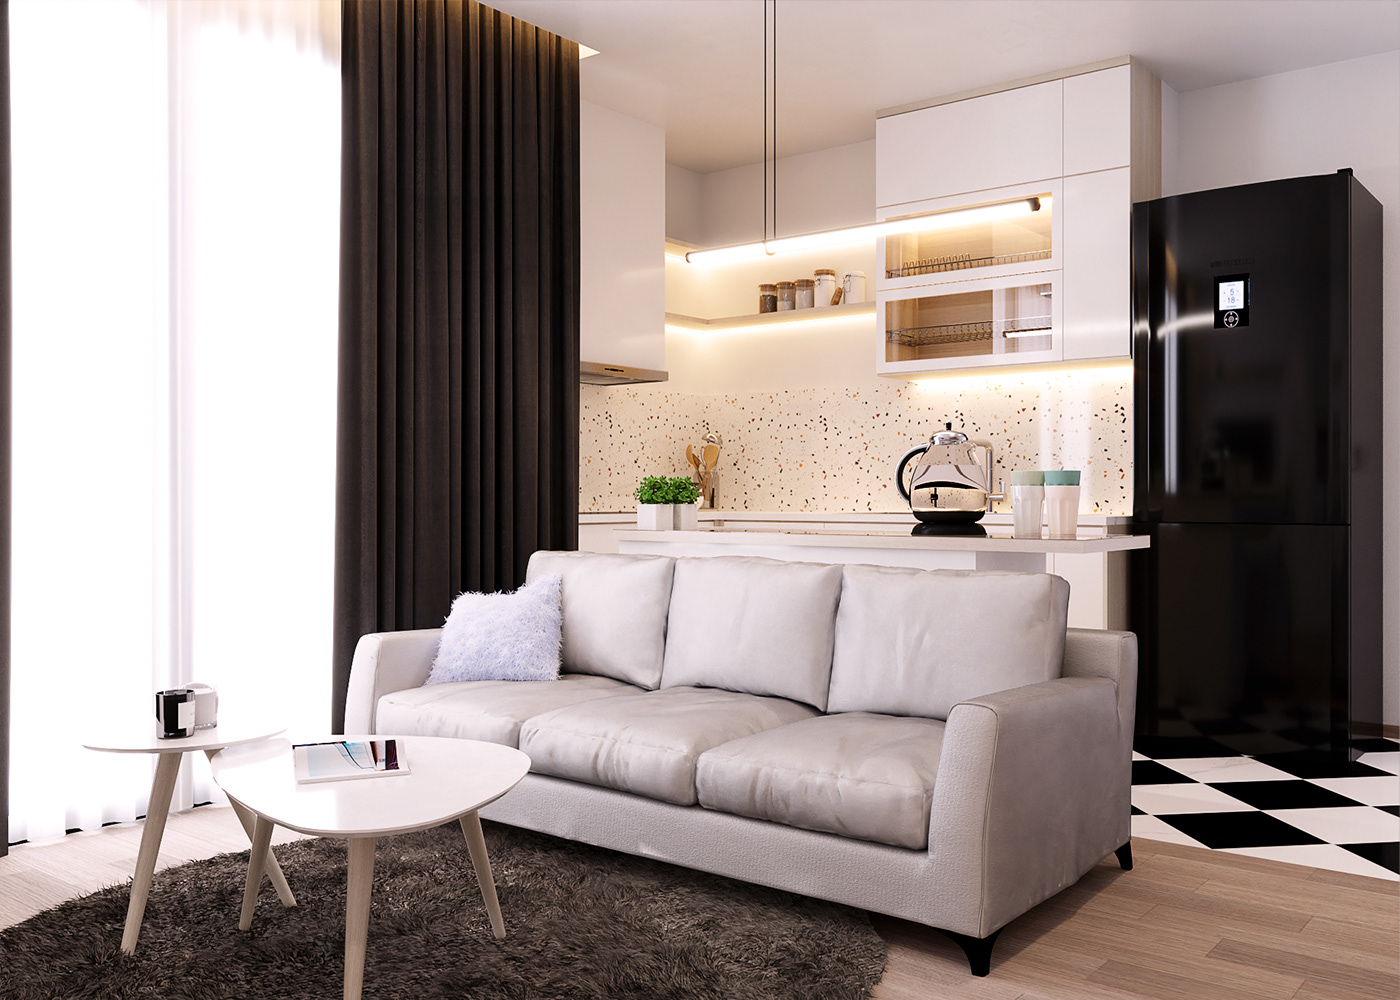 3D altar apartment architect architecture Interior interior design  interiordesign kitchen livingroom